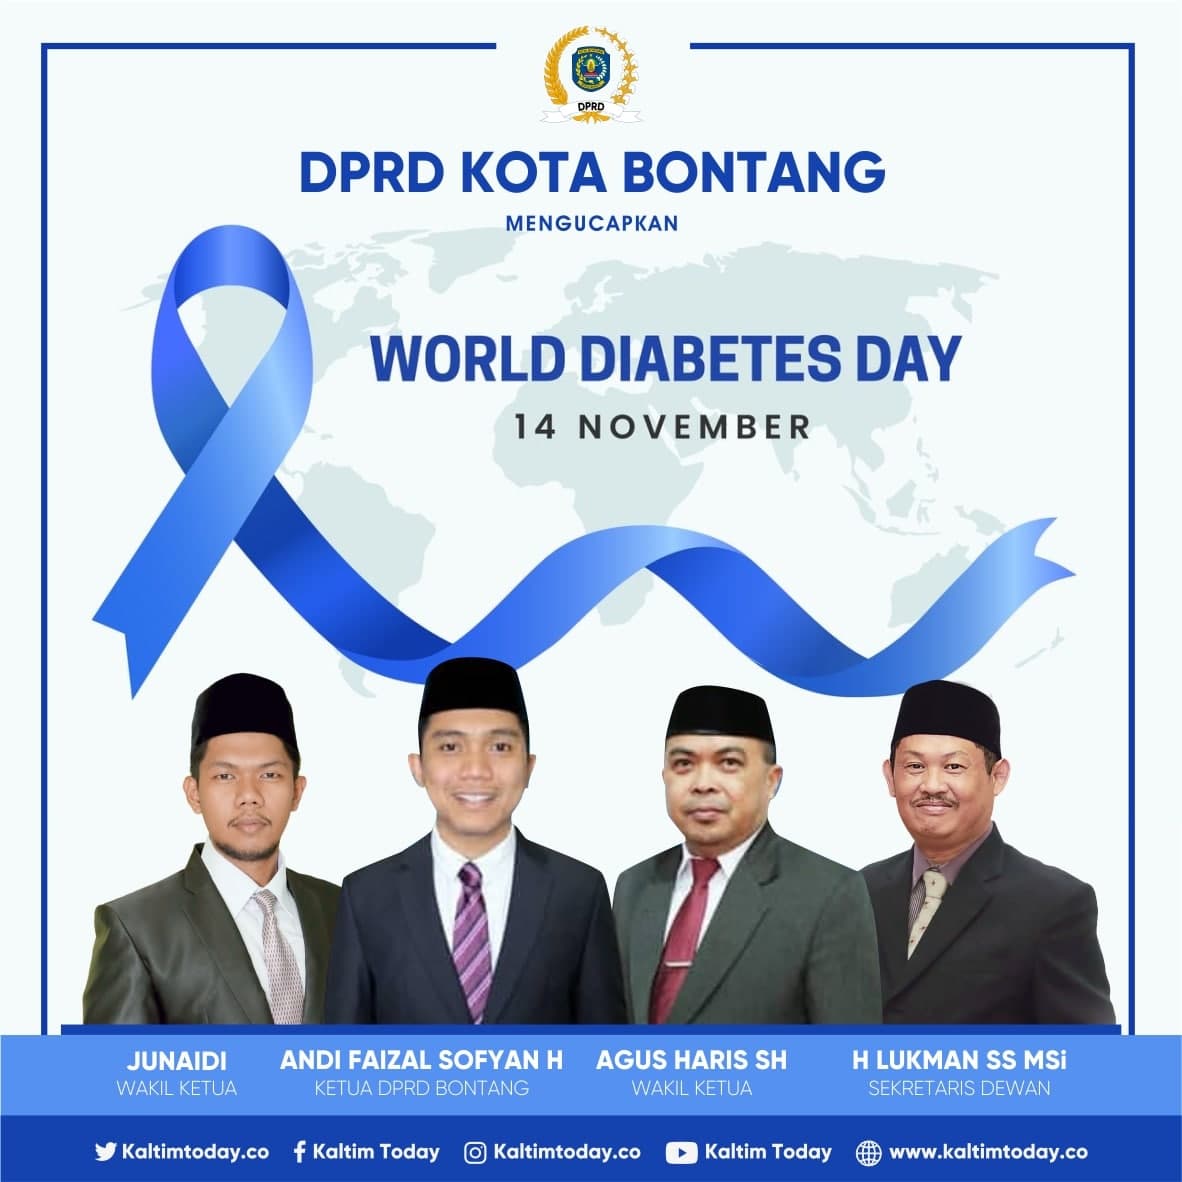 Hari Diabetes Sedunia